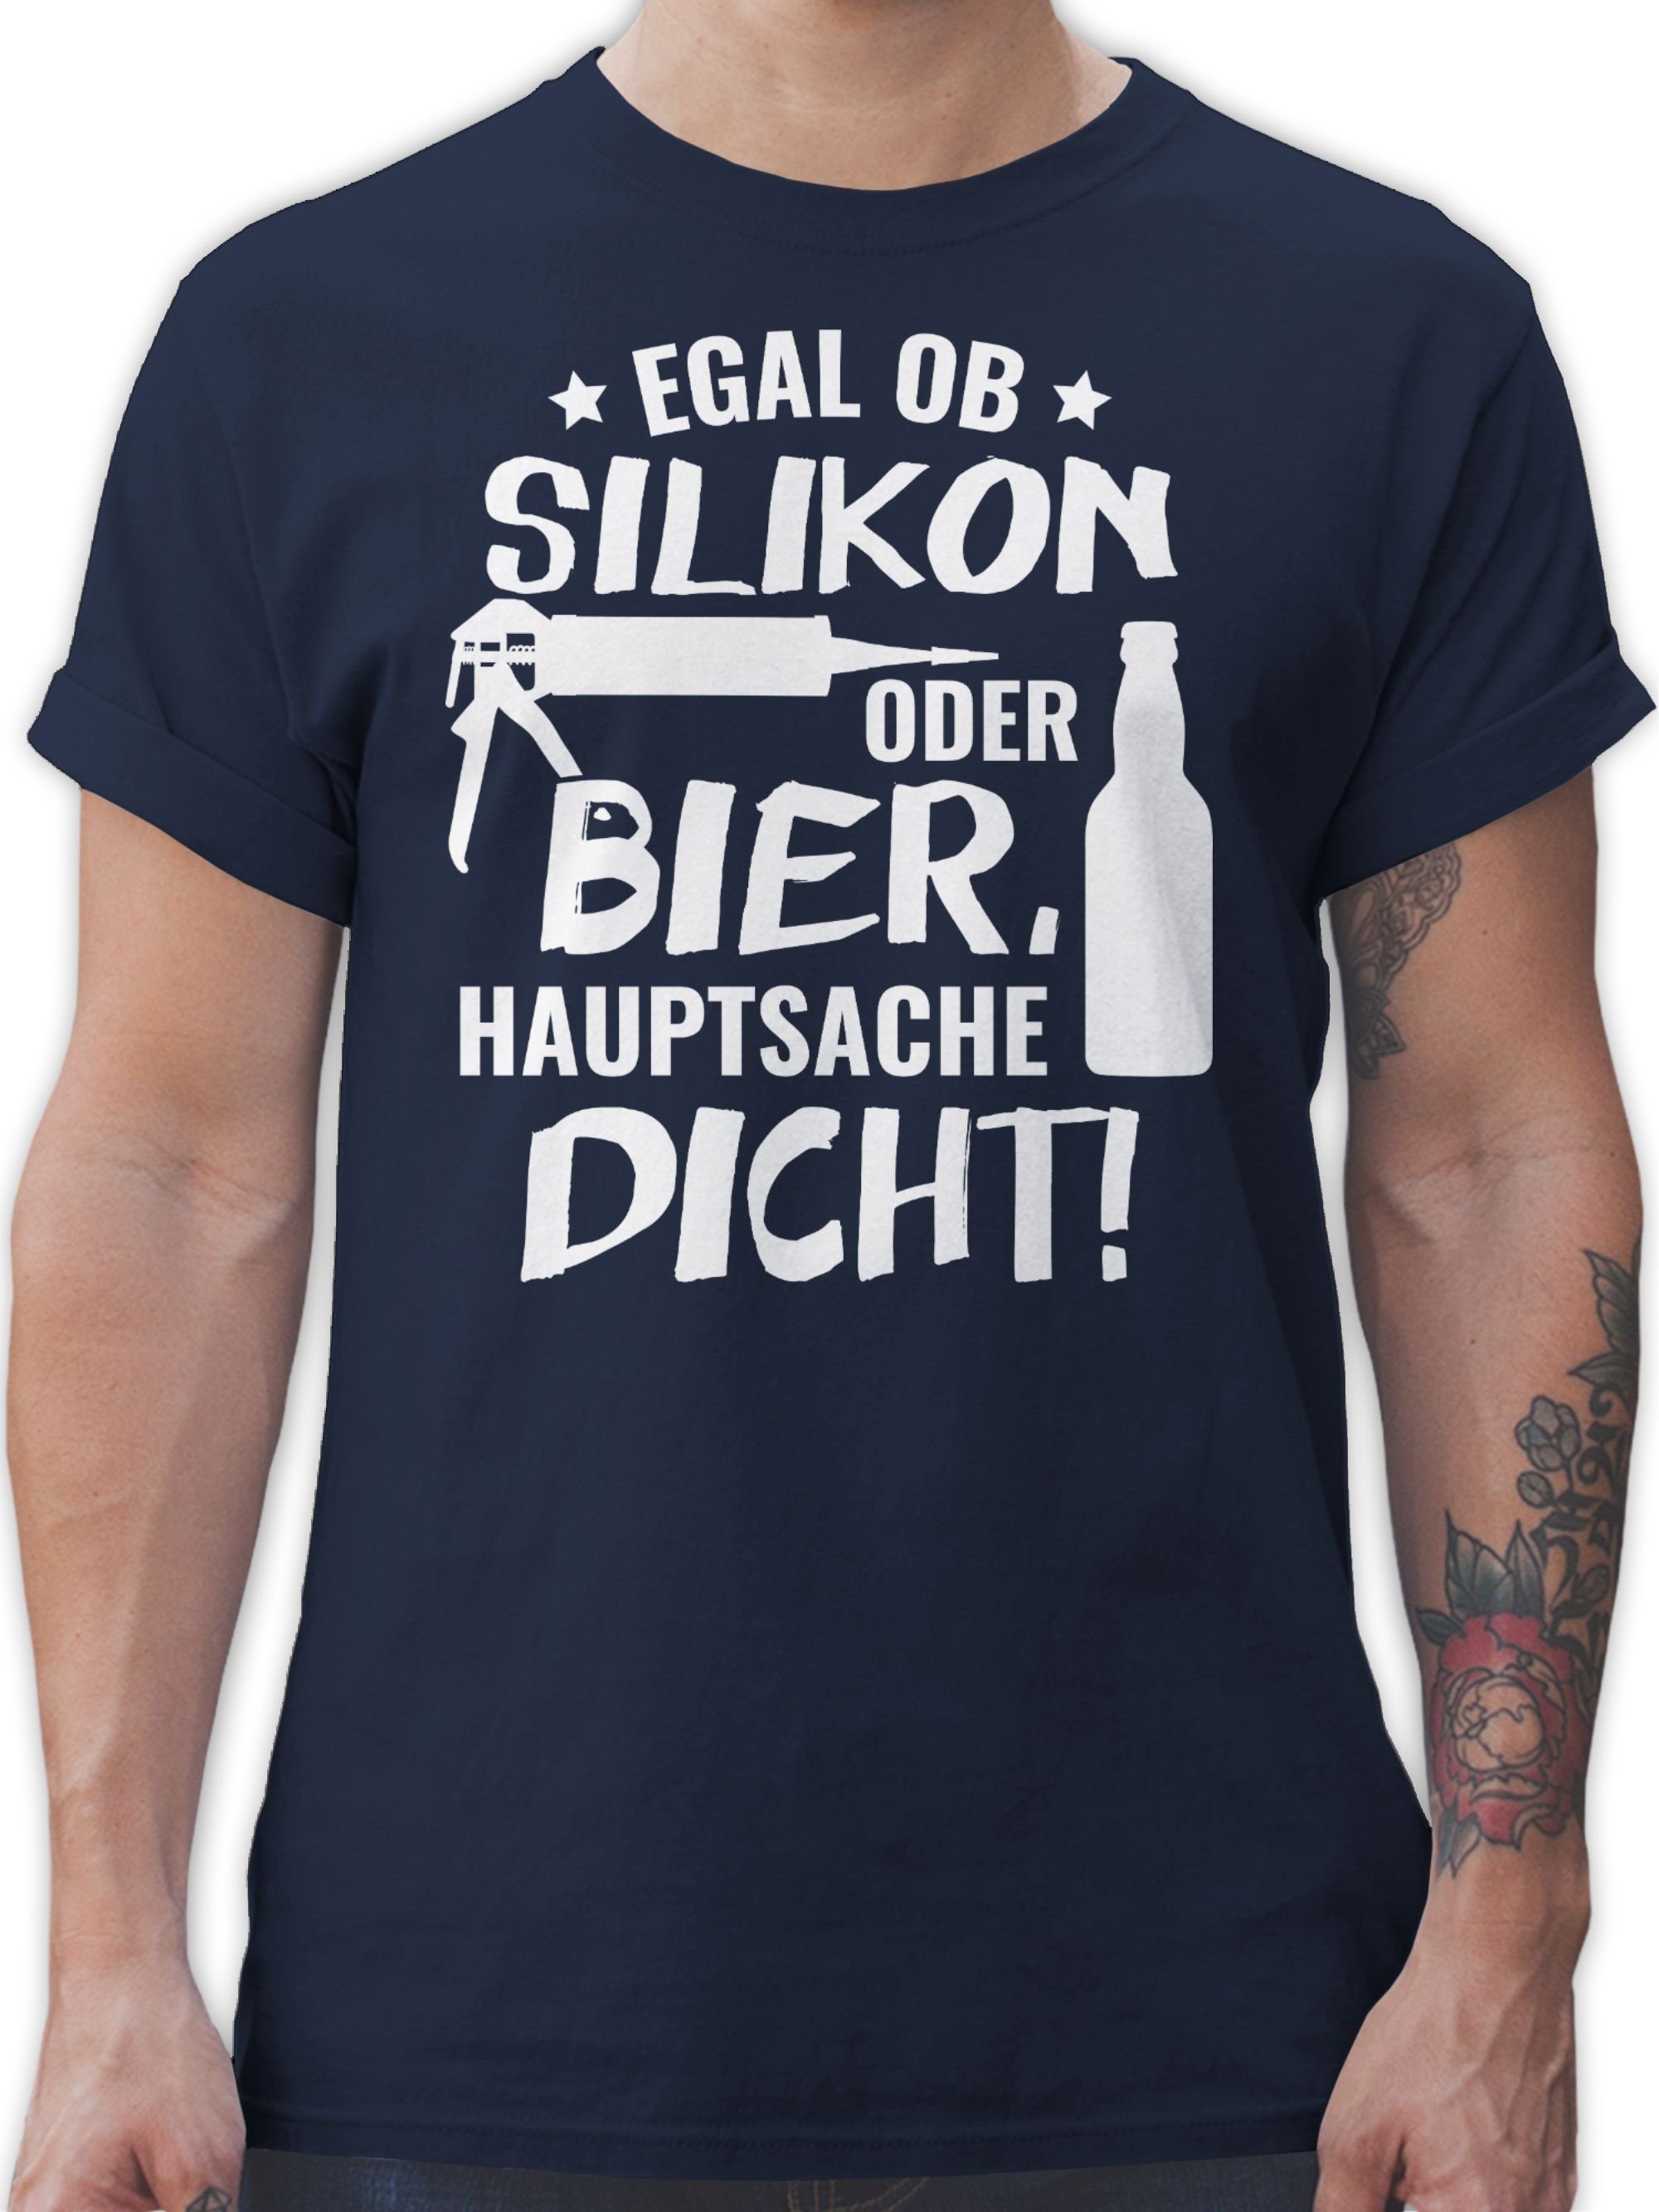 Egal Hauptsache Bier Dicht oder Navy Blau mit Statement Silikon Shirtracer T-Shirt Sprüche Spruch ob 03